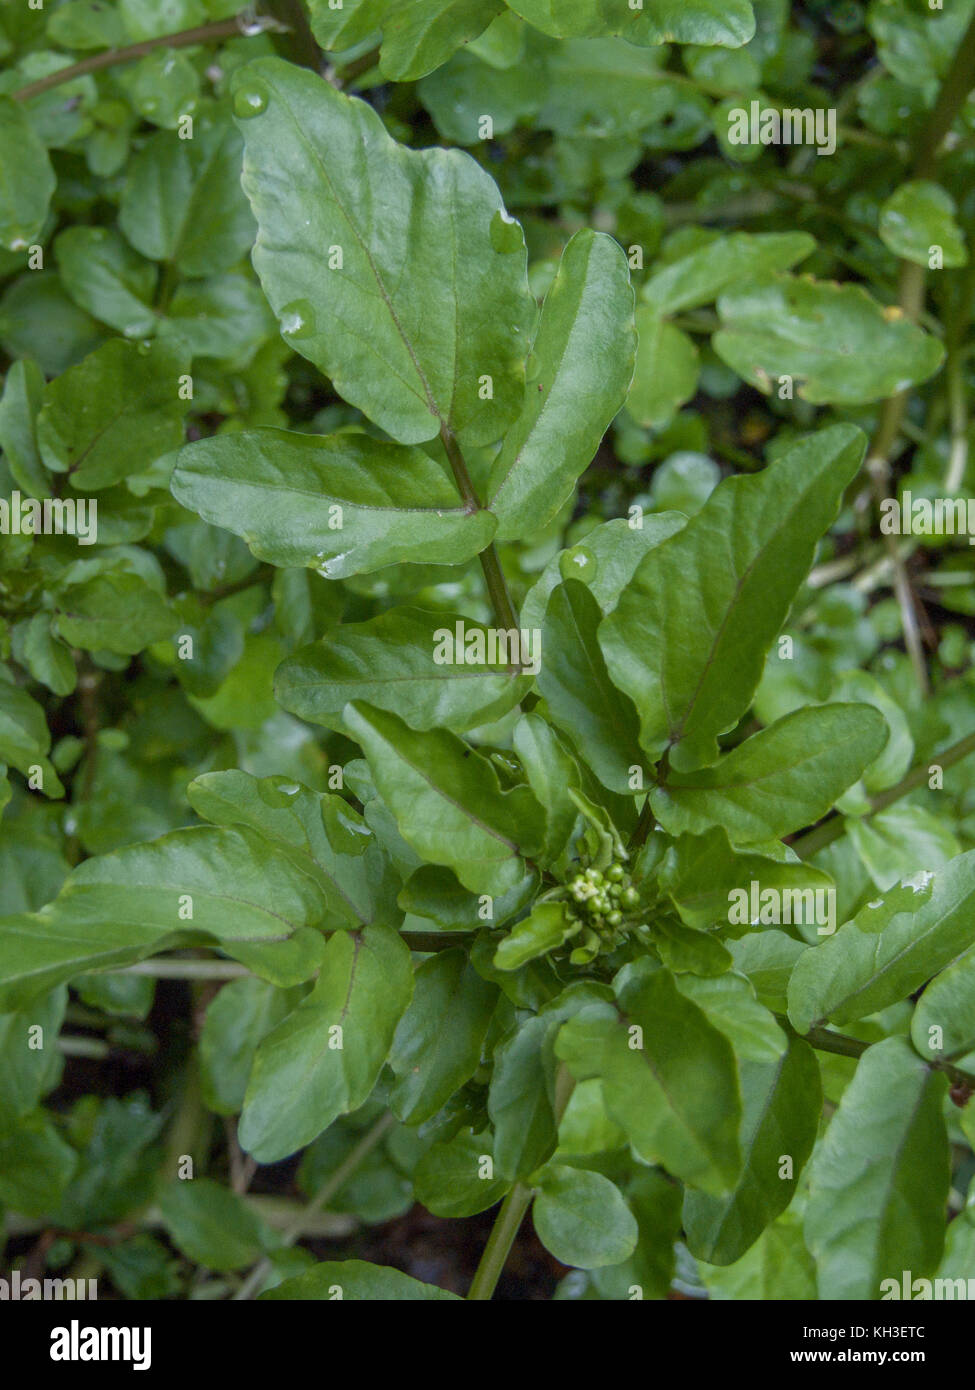 Water-cress / Rorippa nasturtium-aquaticum / Nasturtium aquaticum / Nasturtium officinale growing in the wild. Stock Photo